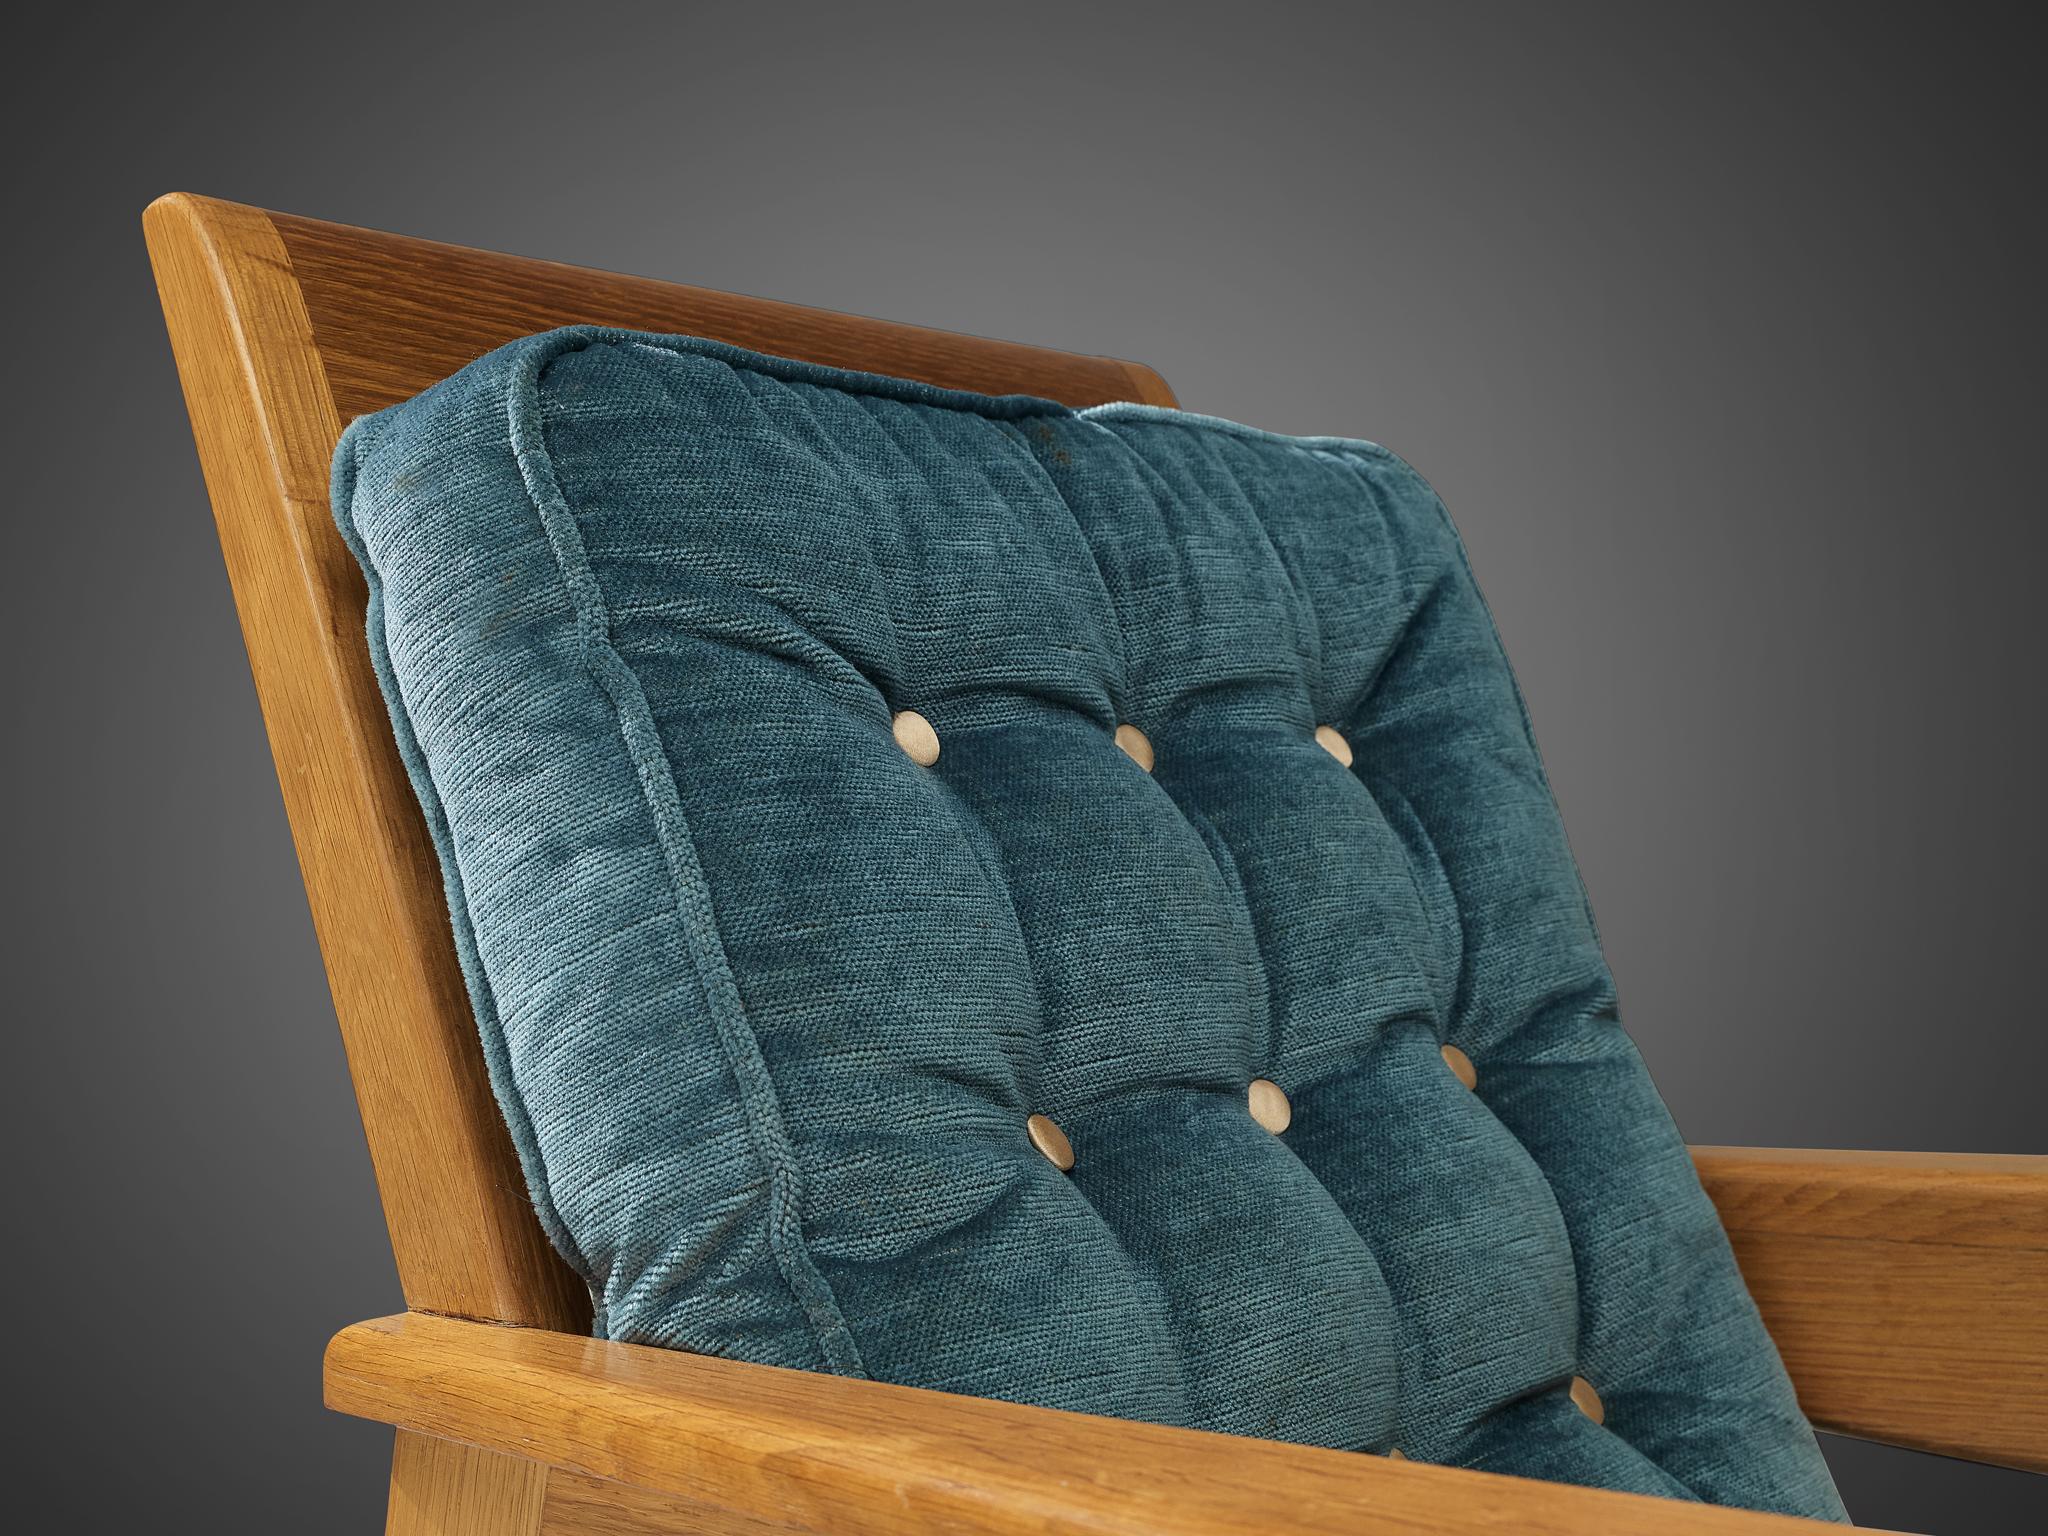 Sessel, Eiche, Samt, Frankreich, 1950er Jahre.

Der französische Designer hat bei der Gestaltung dieses besonderen Stuhls einen konstruktivistischen Ansatz verfolgt. Der Eichenholzrahmen basiert auf scharfen horizontalen und vertikalen Linien, die